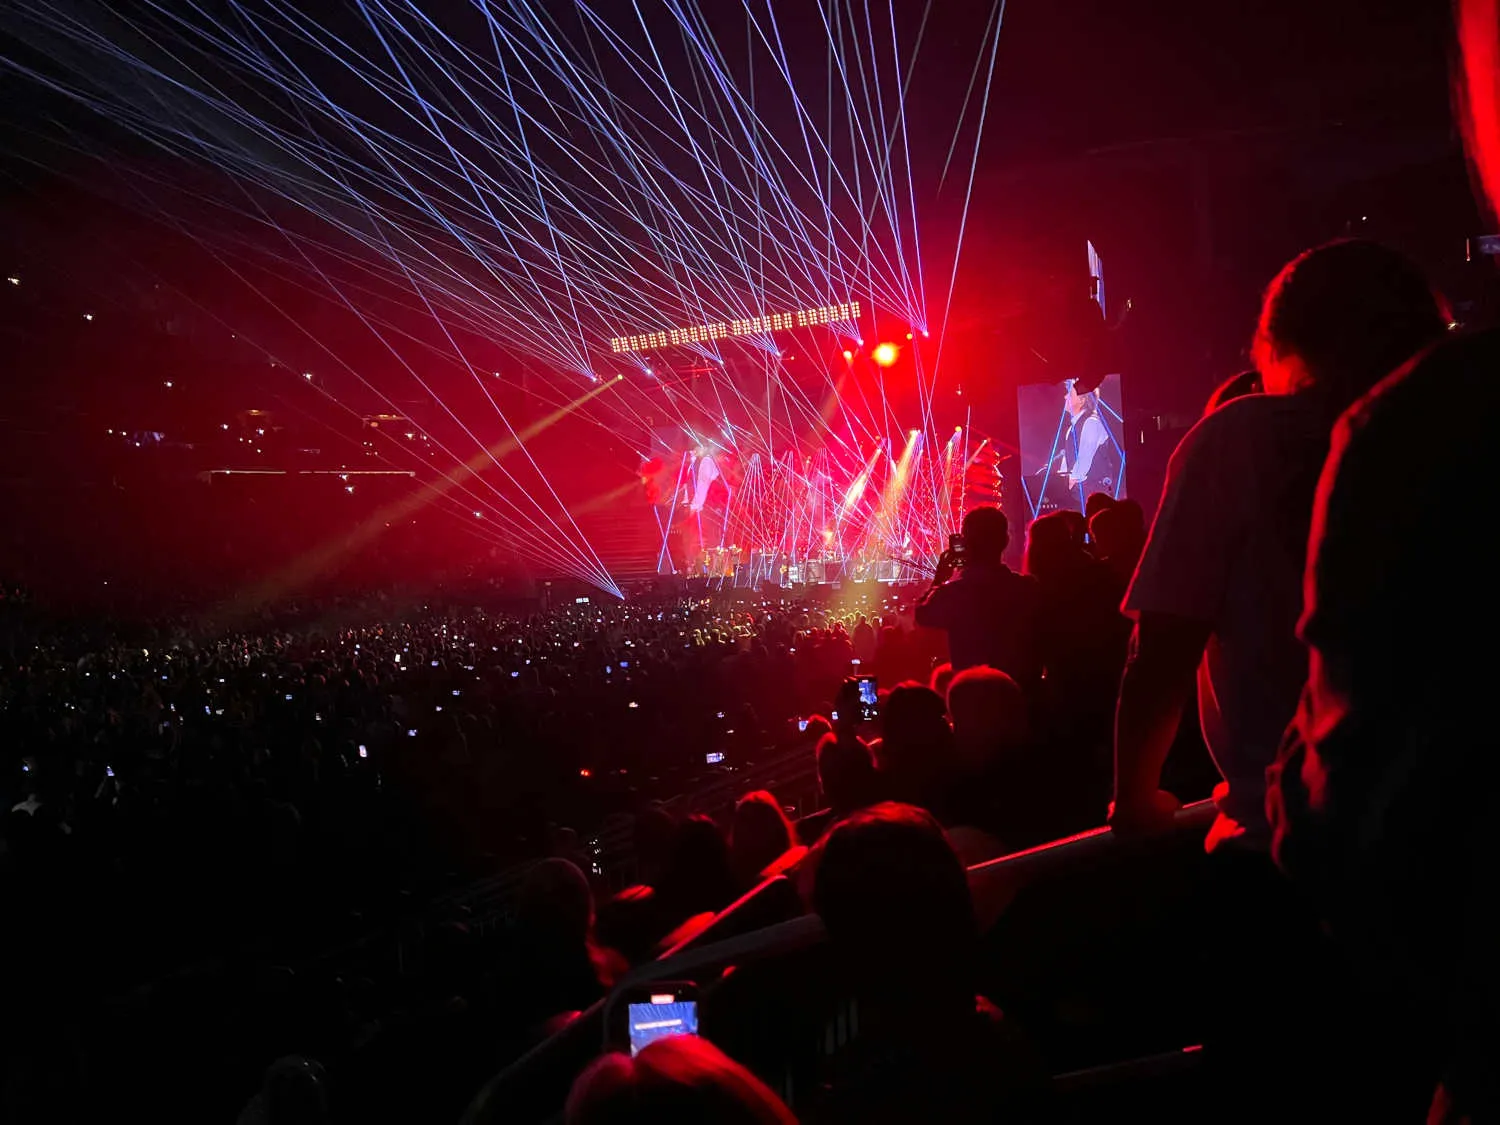 Menschen in einem Laserlichtkonzert